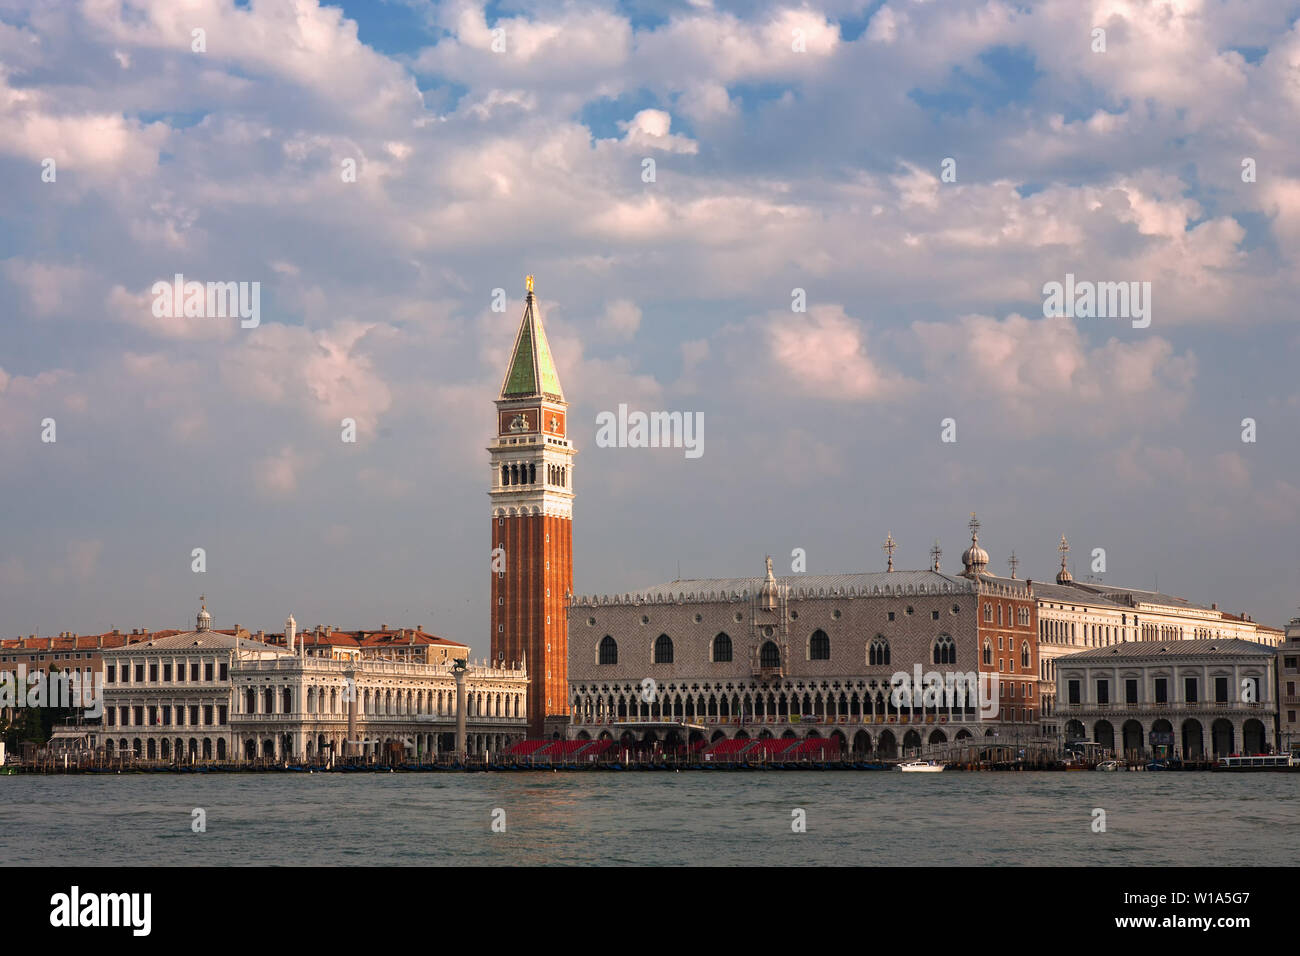 El enfoque clásico a Venecia por mar: el hotel Campanile di San Marco, Piazzetta di San Marco y el Palacio Ducal desde el Bacino di San Marco, Venecia Foto de stock